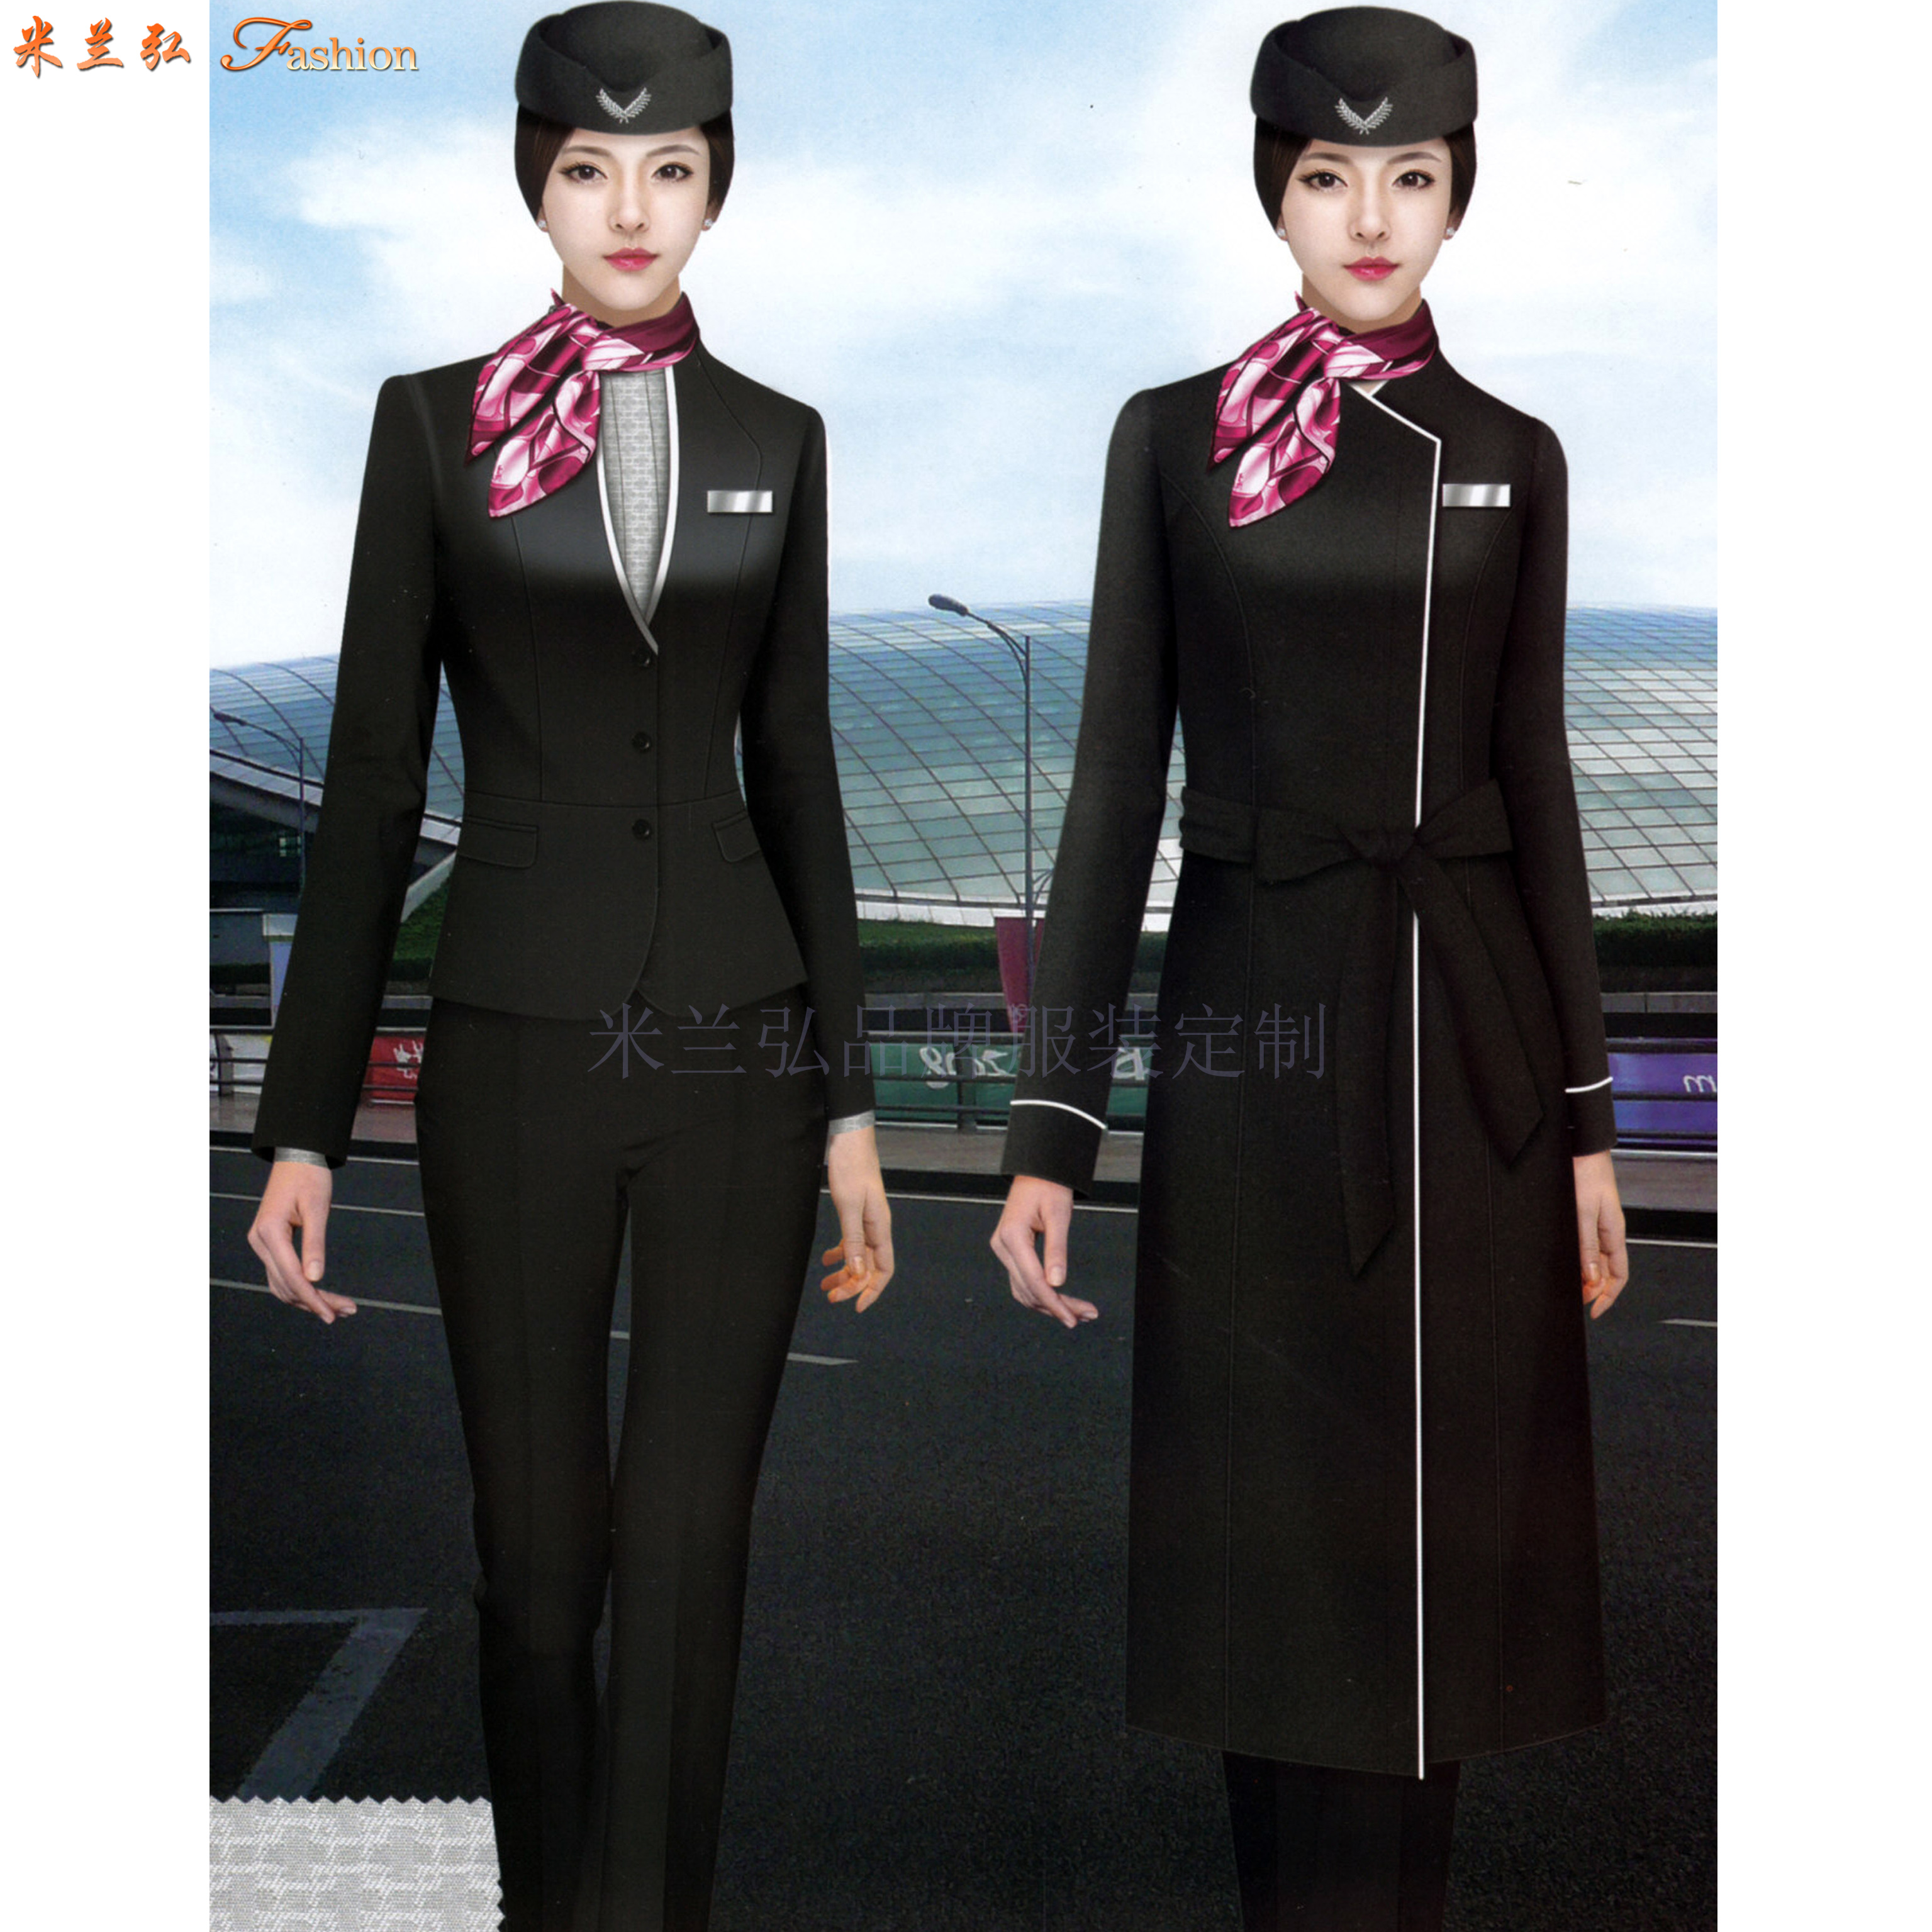 「航空大衣」量身定制各大航空公司的冬季大衣-米蘭弘服裝-5